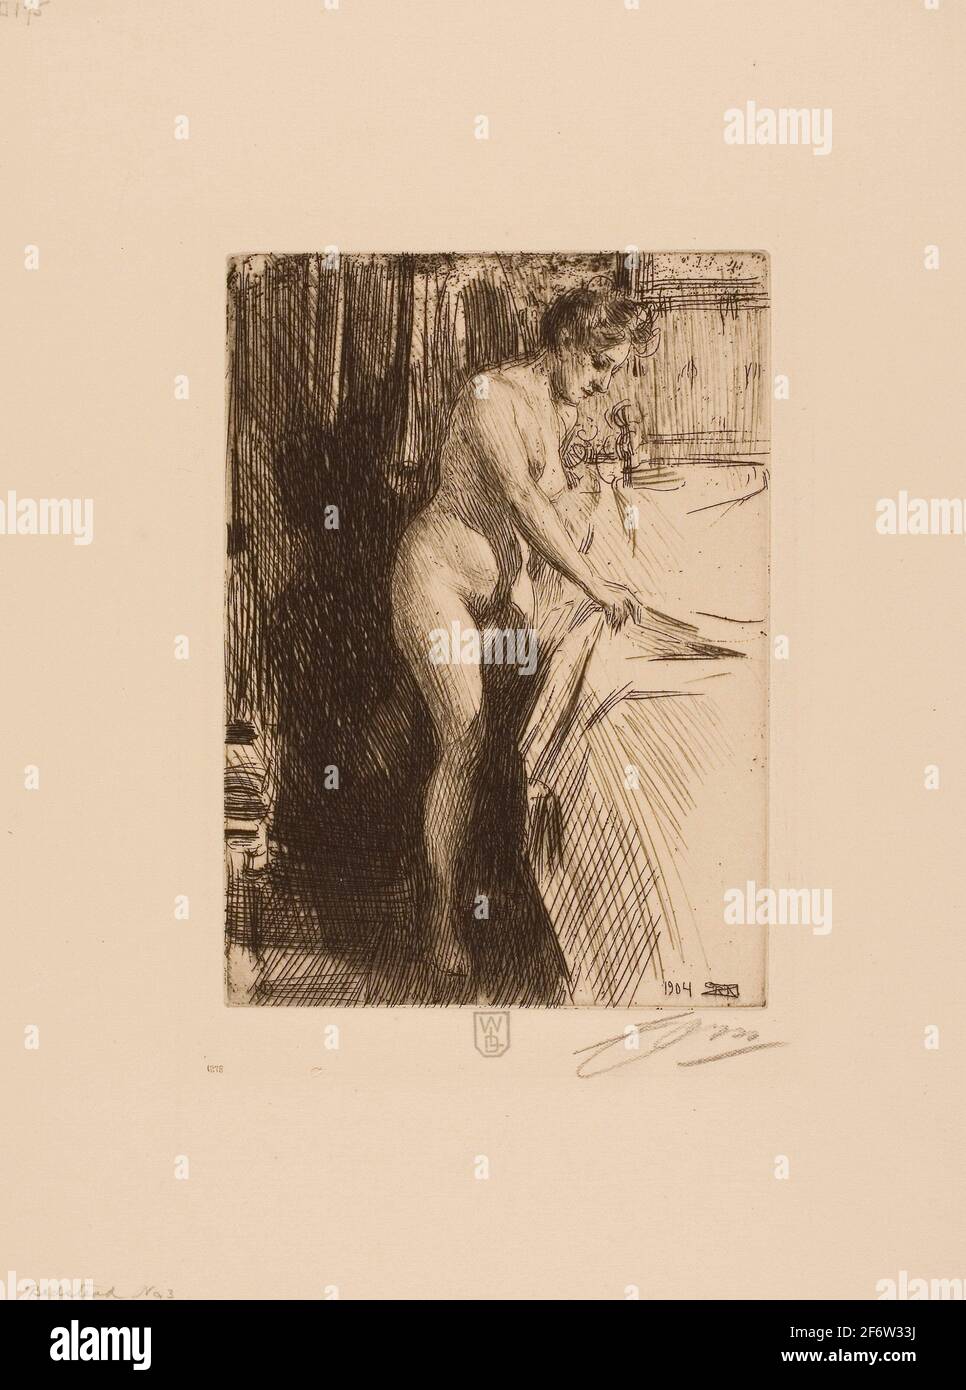 Auteur: Anders Zorn. Olandine - 1904 - Anders Zorn Suédois, 1860-1920. Gravure sur papier ivoire. Suède. Banque D'Images